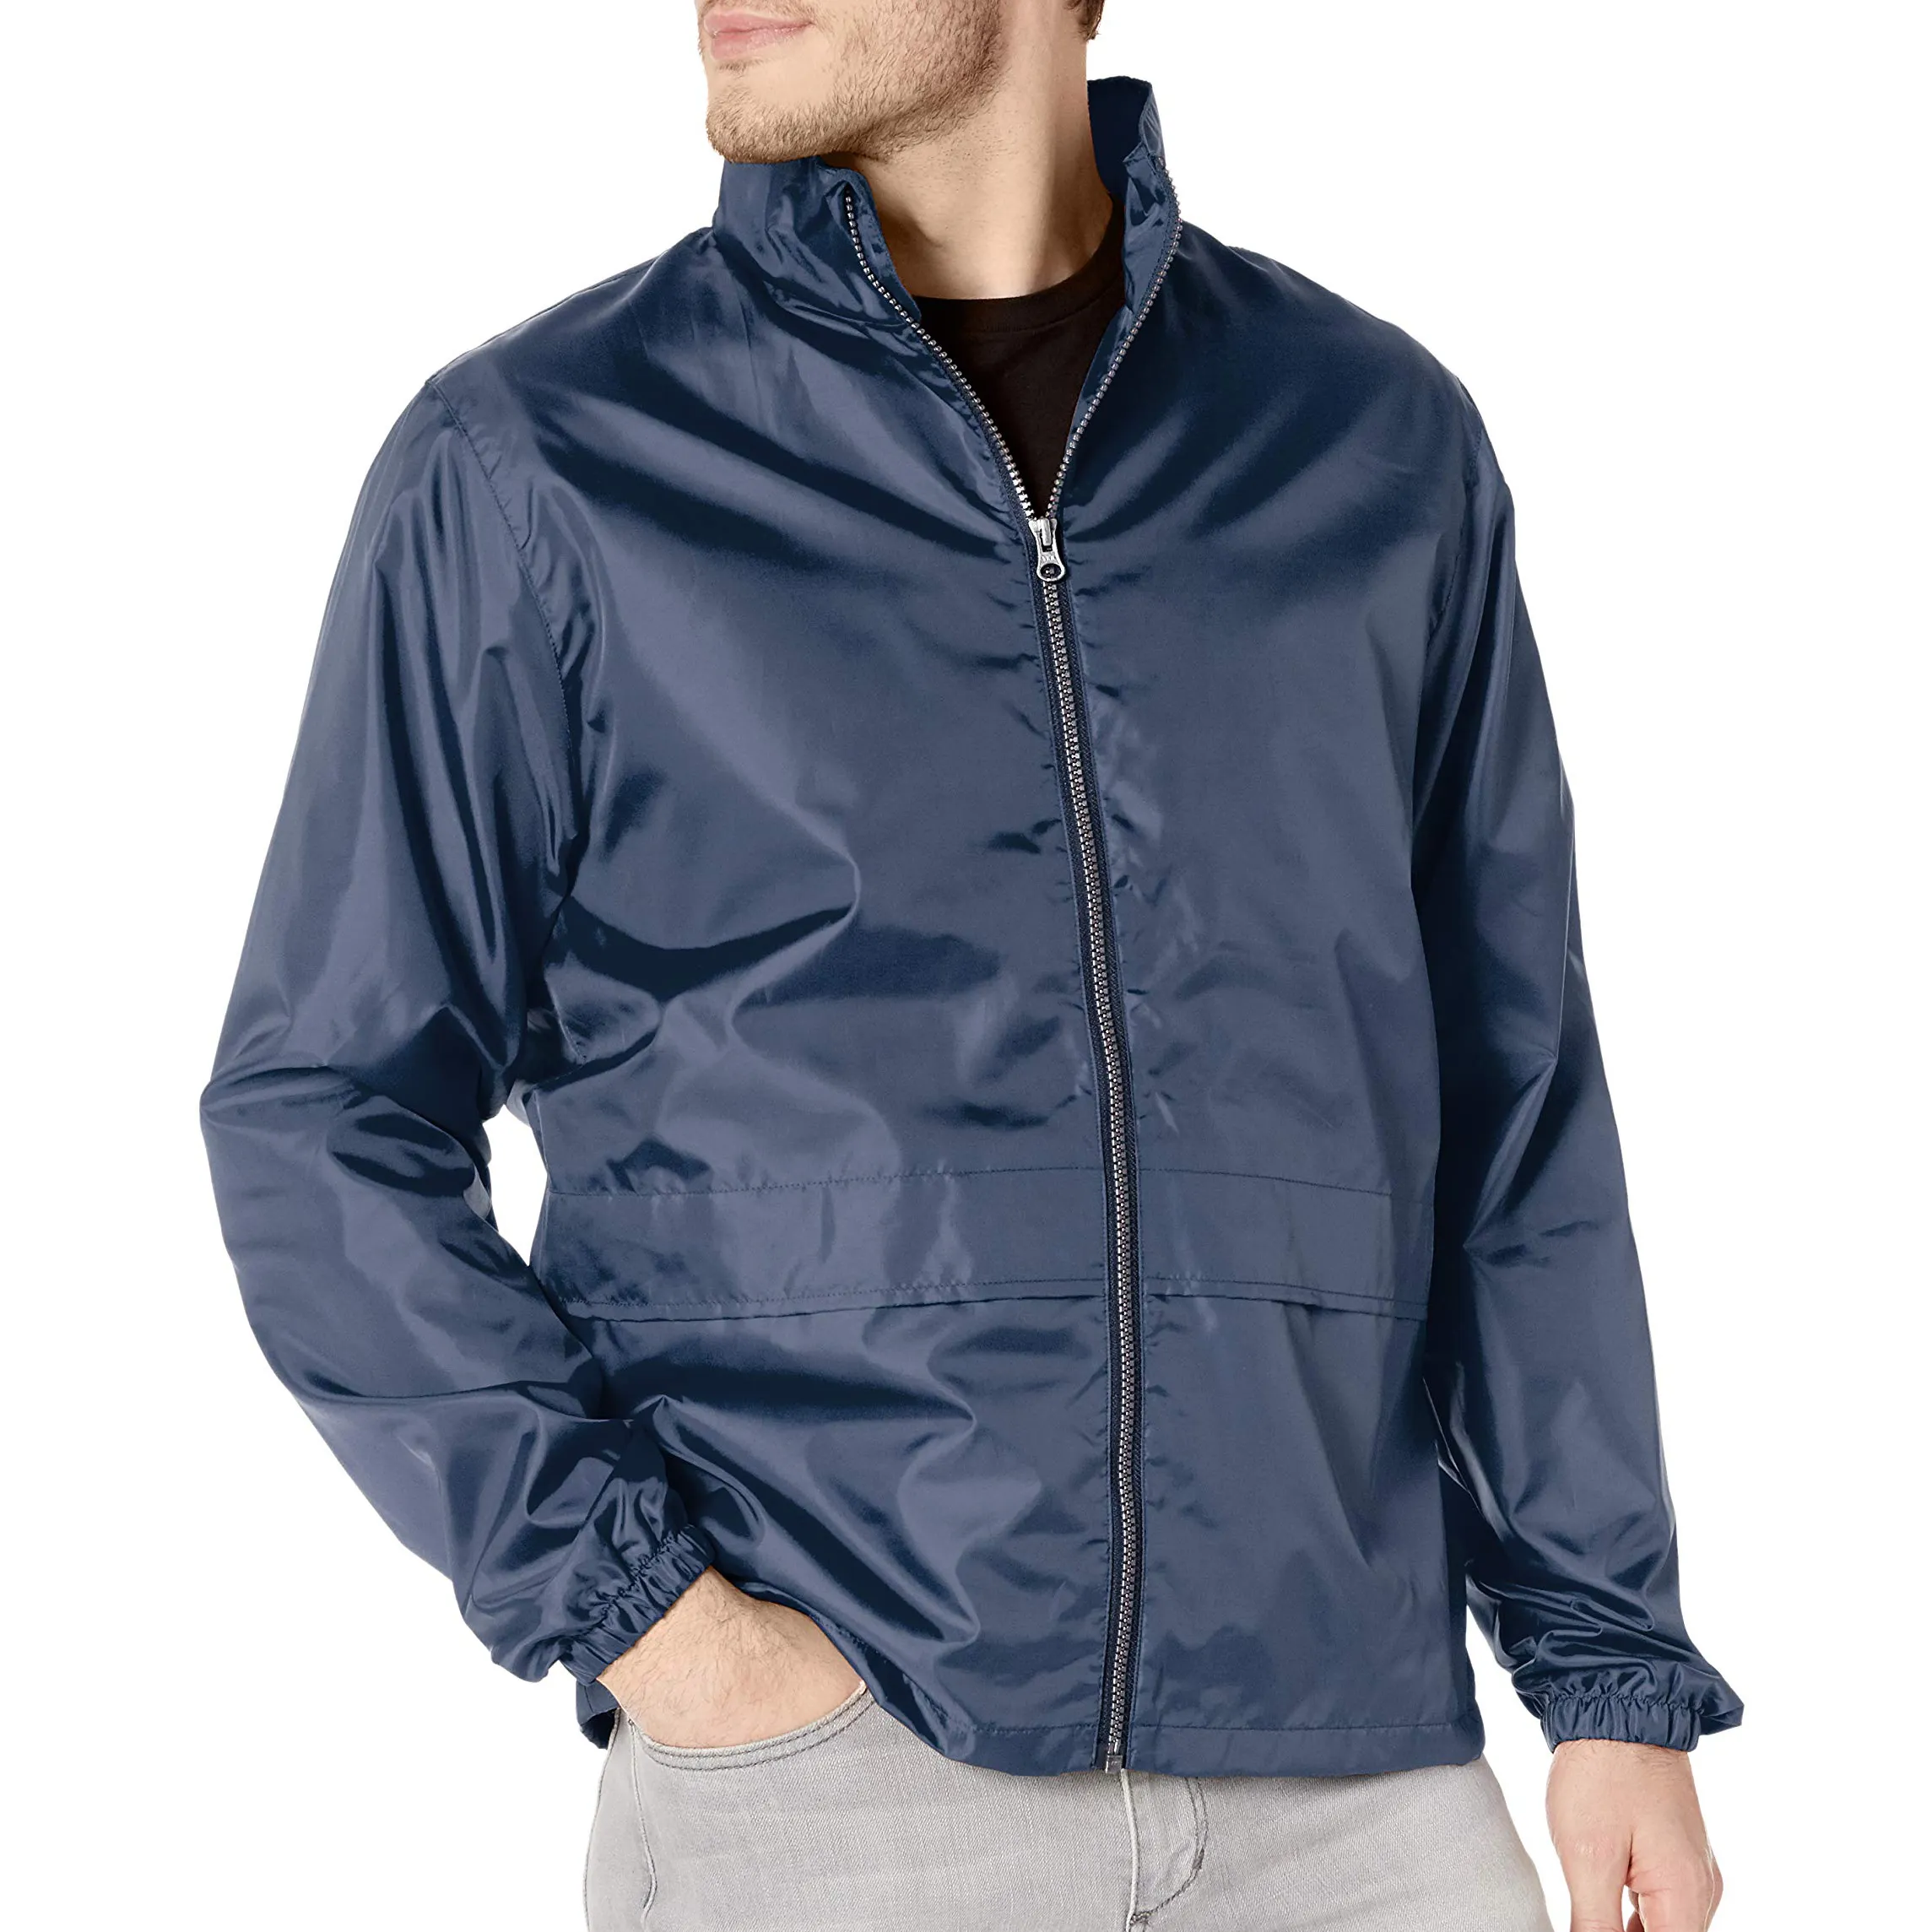 Servizio OEM giacca a vento di ultima generazione giacca a vento da uomo impermeabile personalizzata di alta qualità